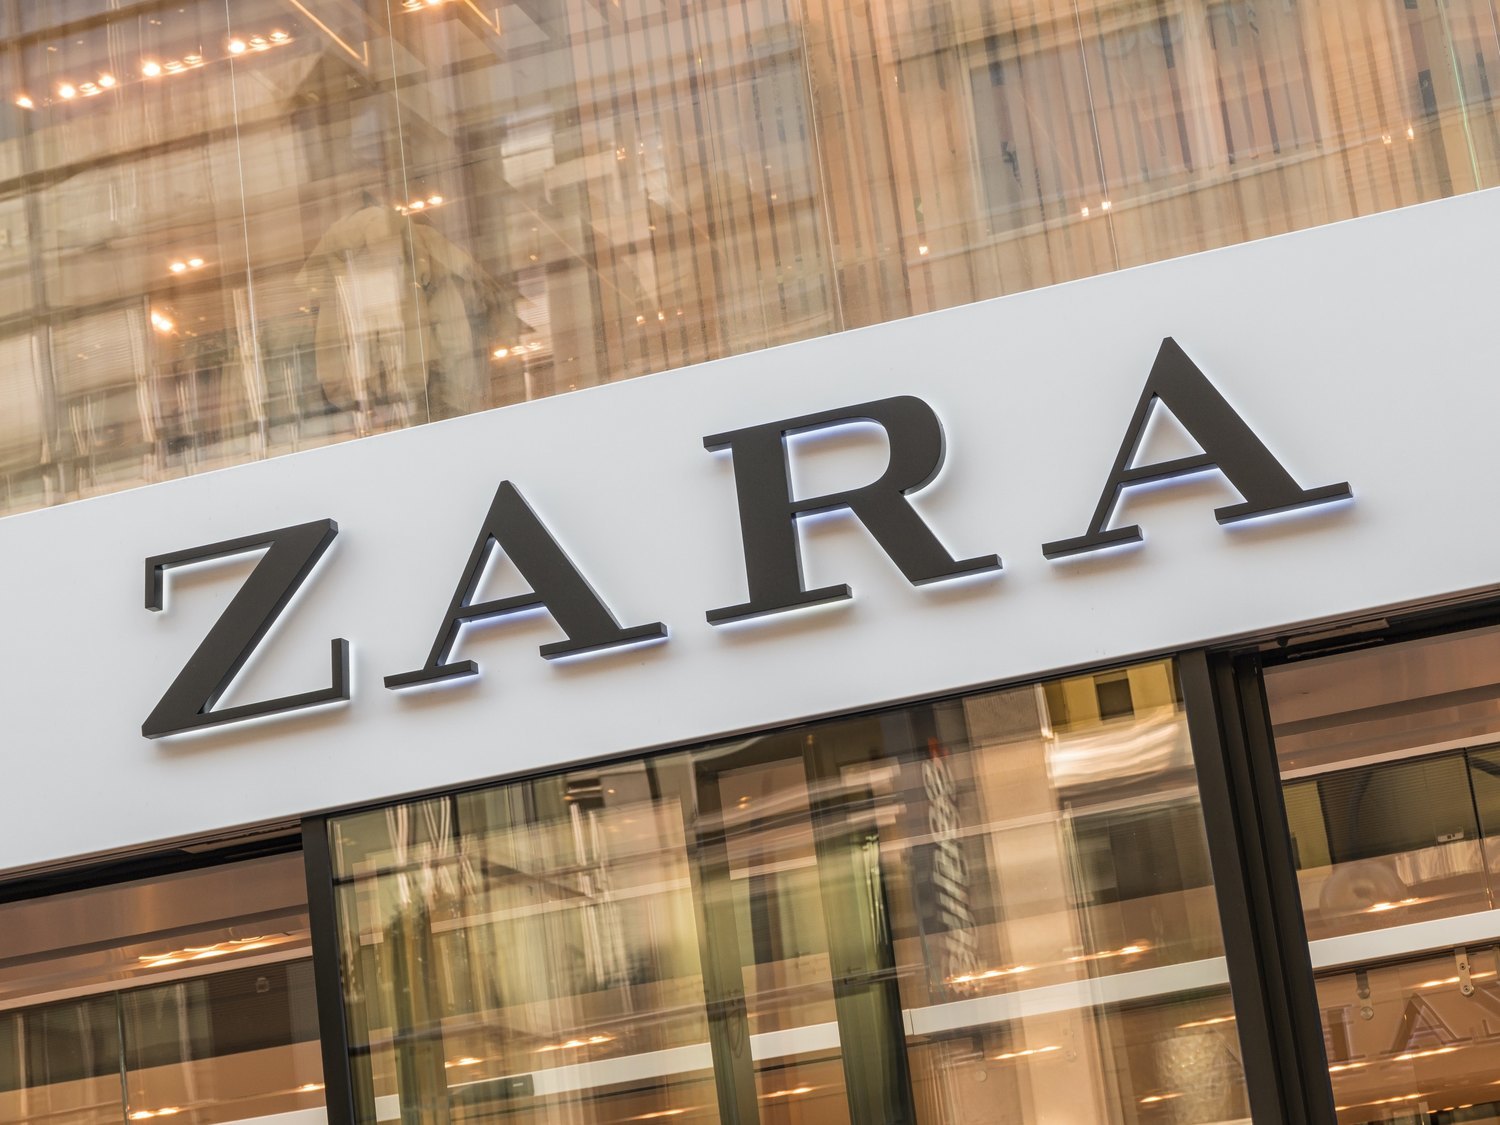 Zara cierra esta emblemática tienda de siete plantas situada en pleno centro de Madrid